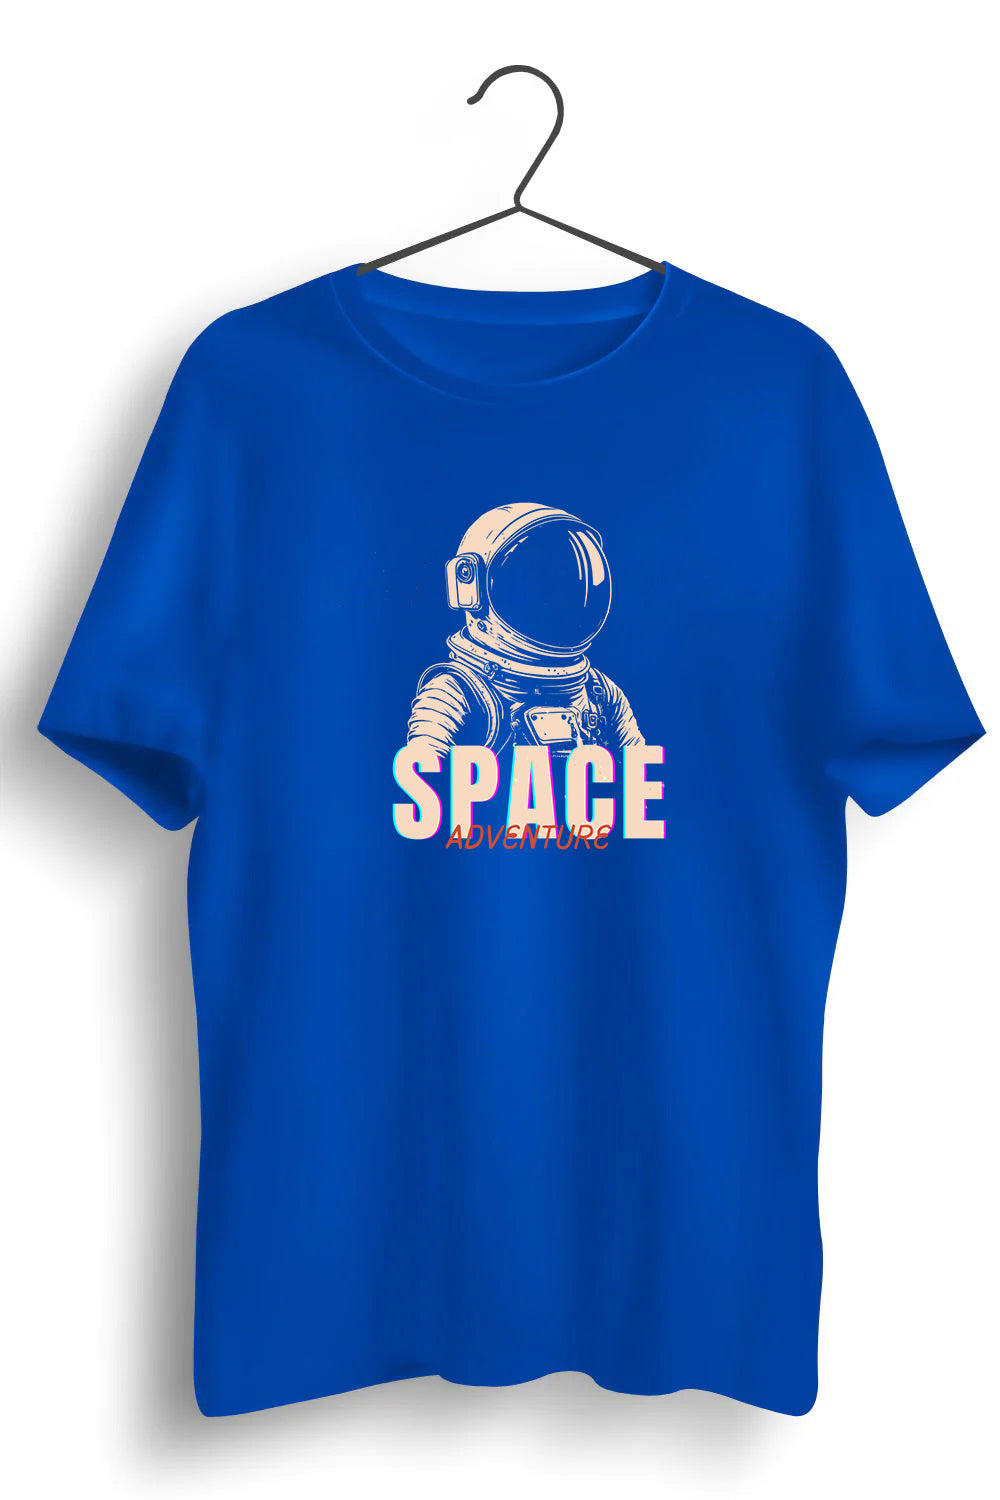 Space Graphic Printed Blue Tshirt